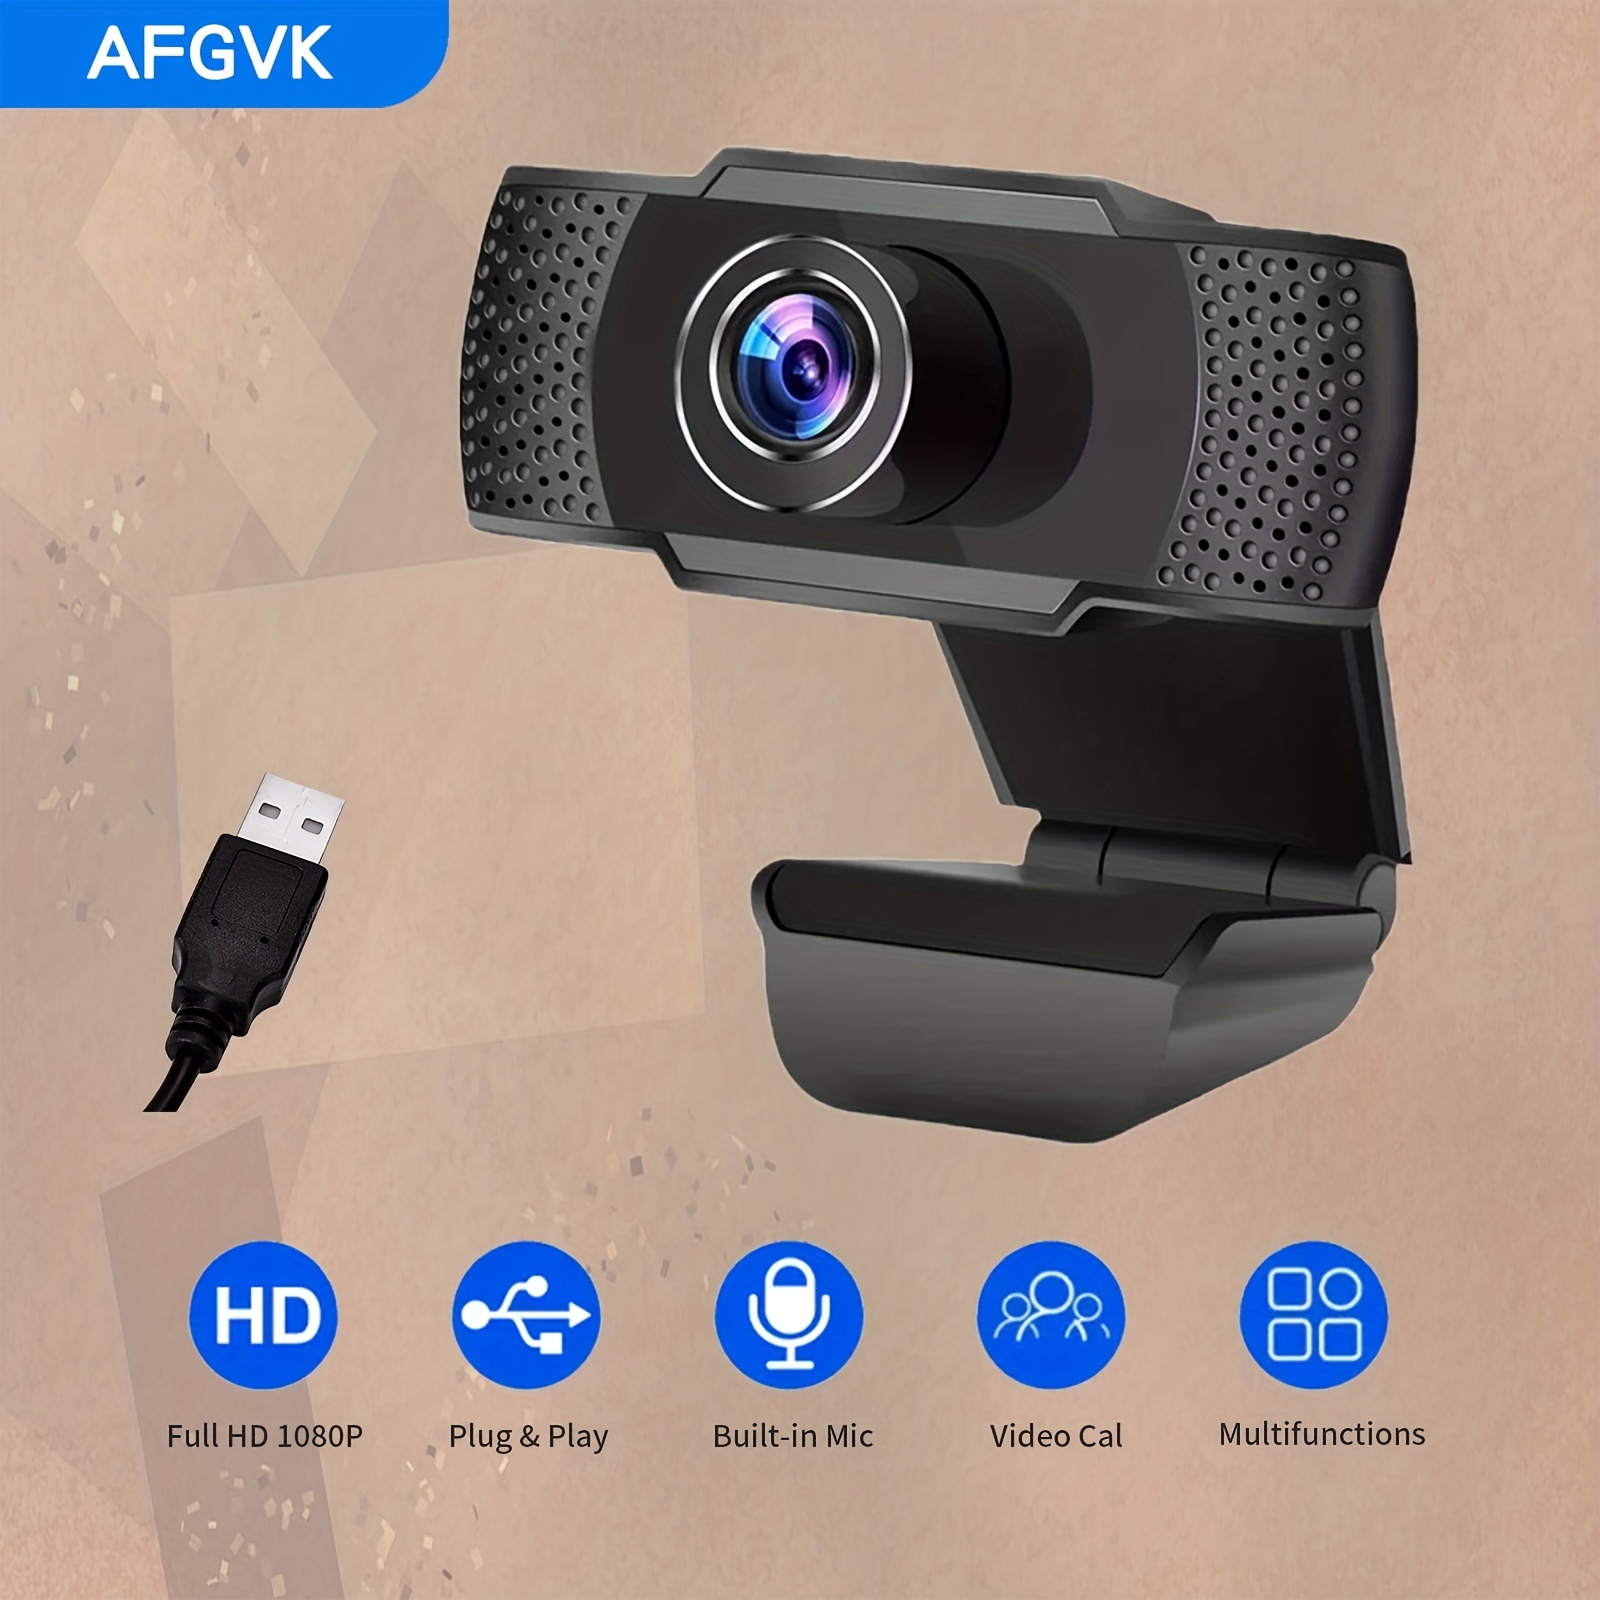 Webcam pour PC, Full HD 1K/2K/4K Appels Vidéo, Autofocus Web Caméra avec  Microphone, Vue Grand Angle 120 Degrés pour Ordinateur 4k blanc